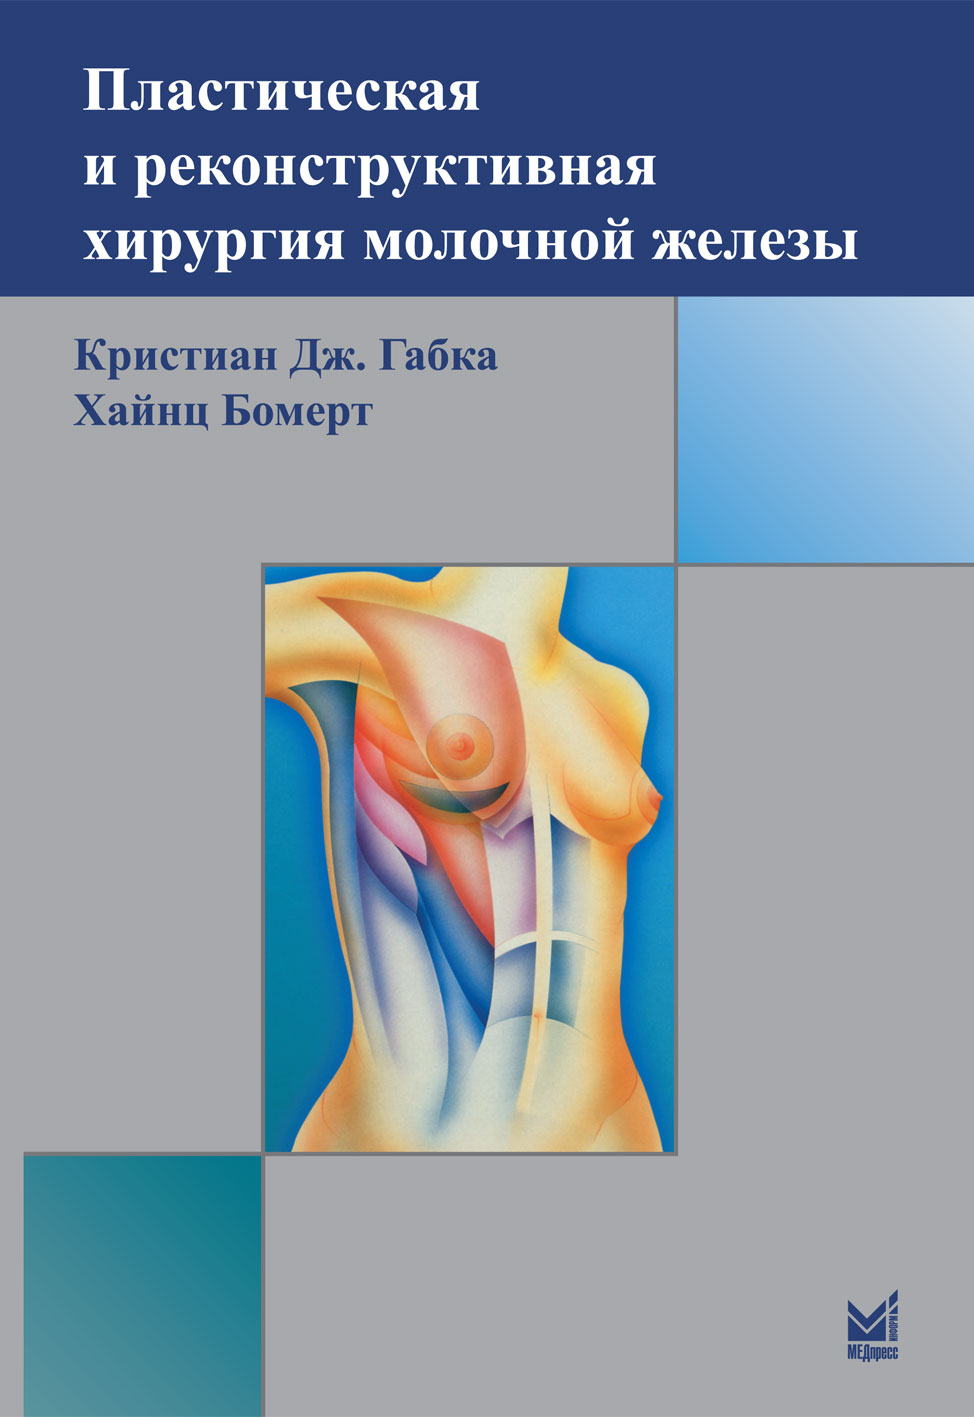 Бомерт Х., Габка К.Дж. Пластическая и реконструктивная хирургия молочной железы 